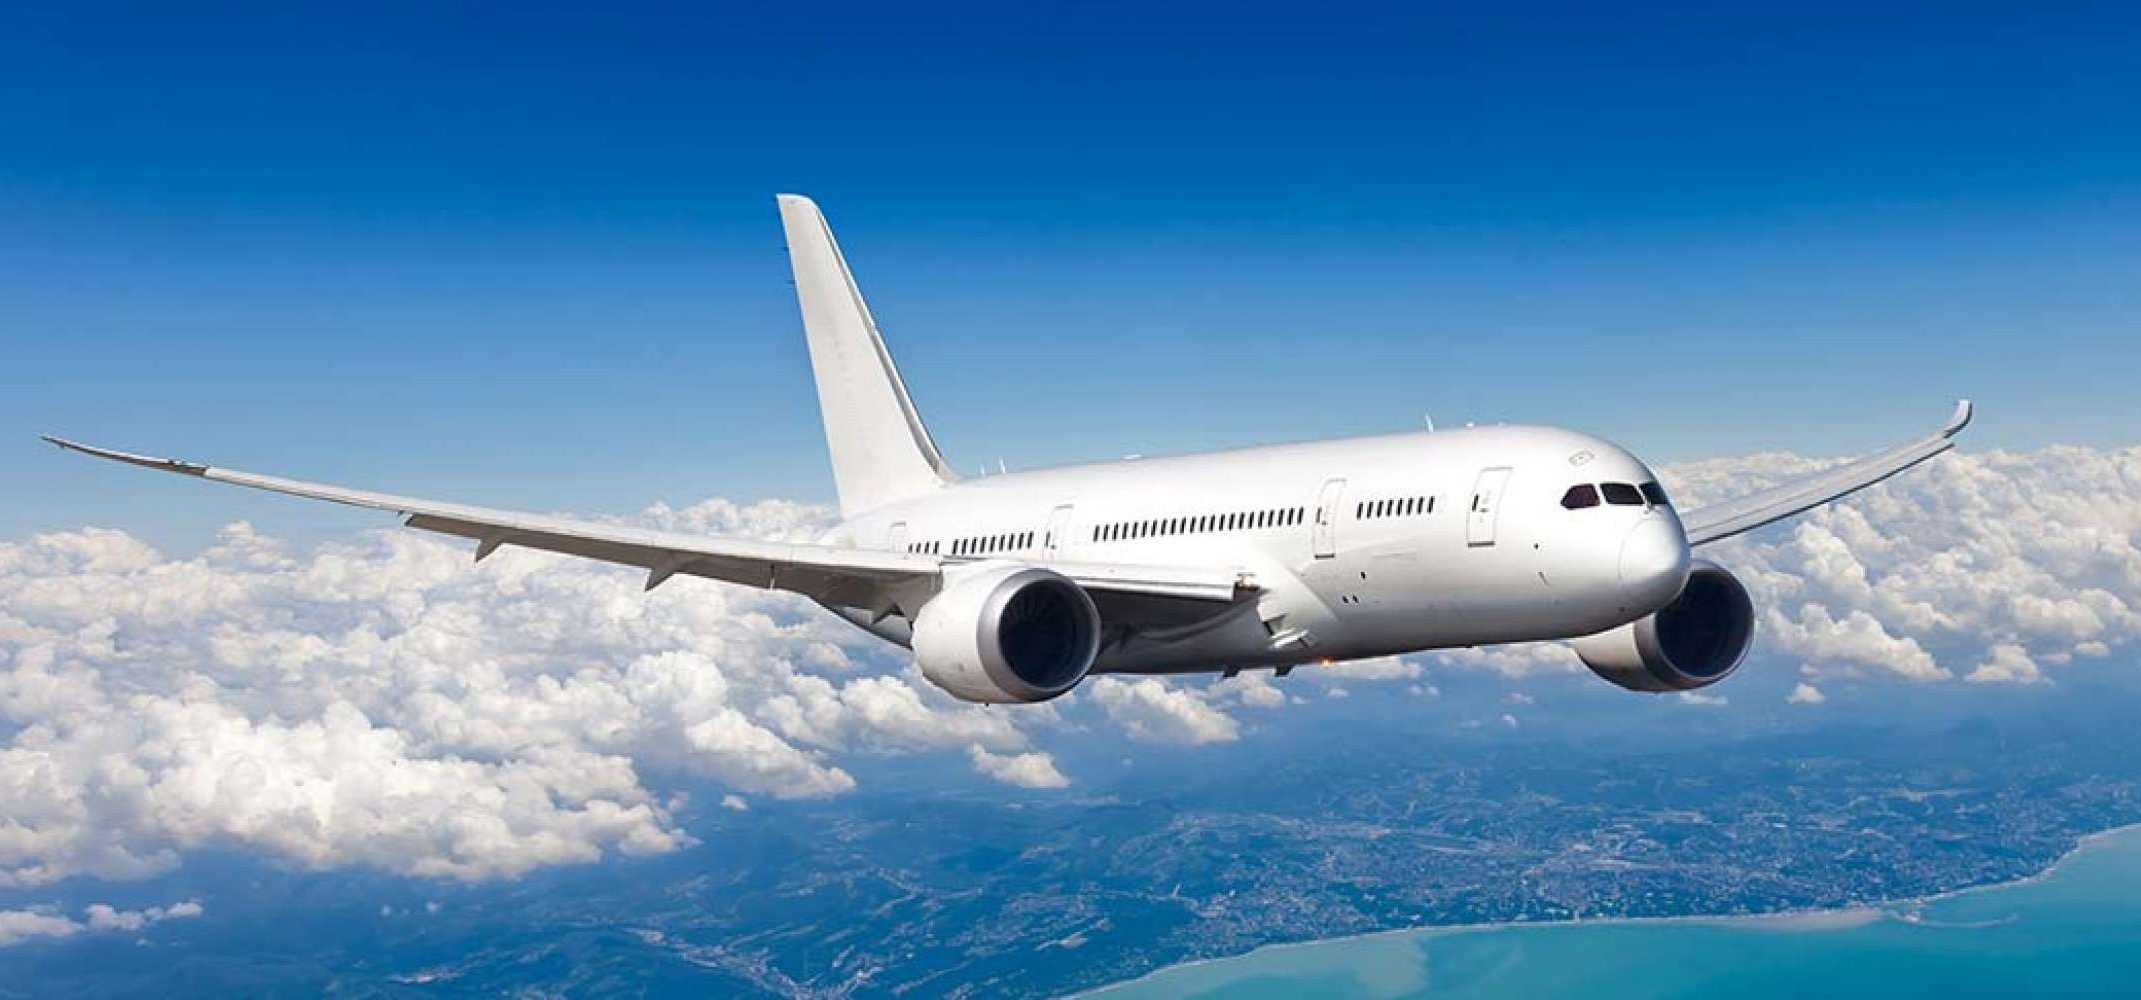 Vietravel Airlines khẳng định sẽ cất cánh vào đầu năm 2021, khởi đầu với số lượng 3 tàu bay và sẽ tăng dần theo yêu cầu của thị trường